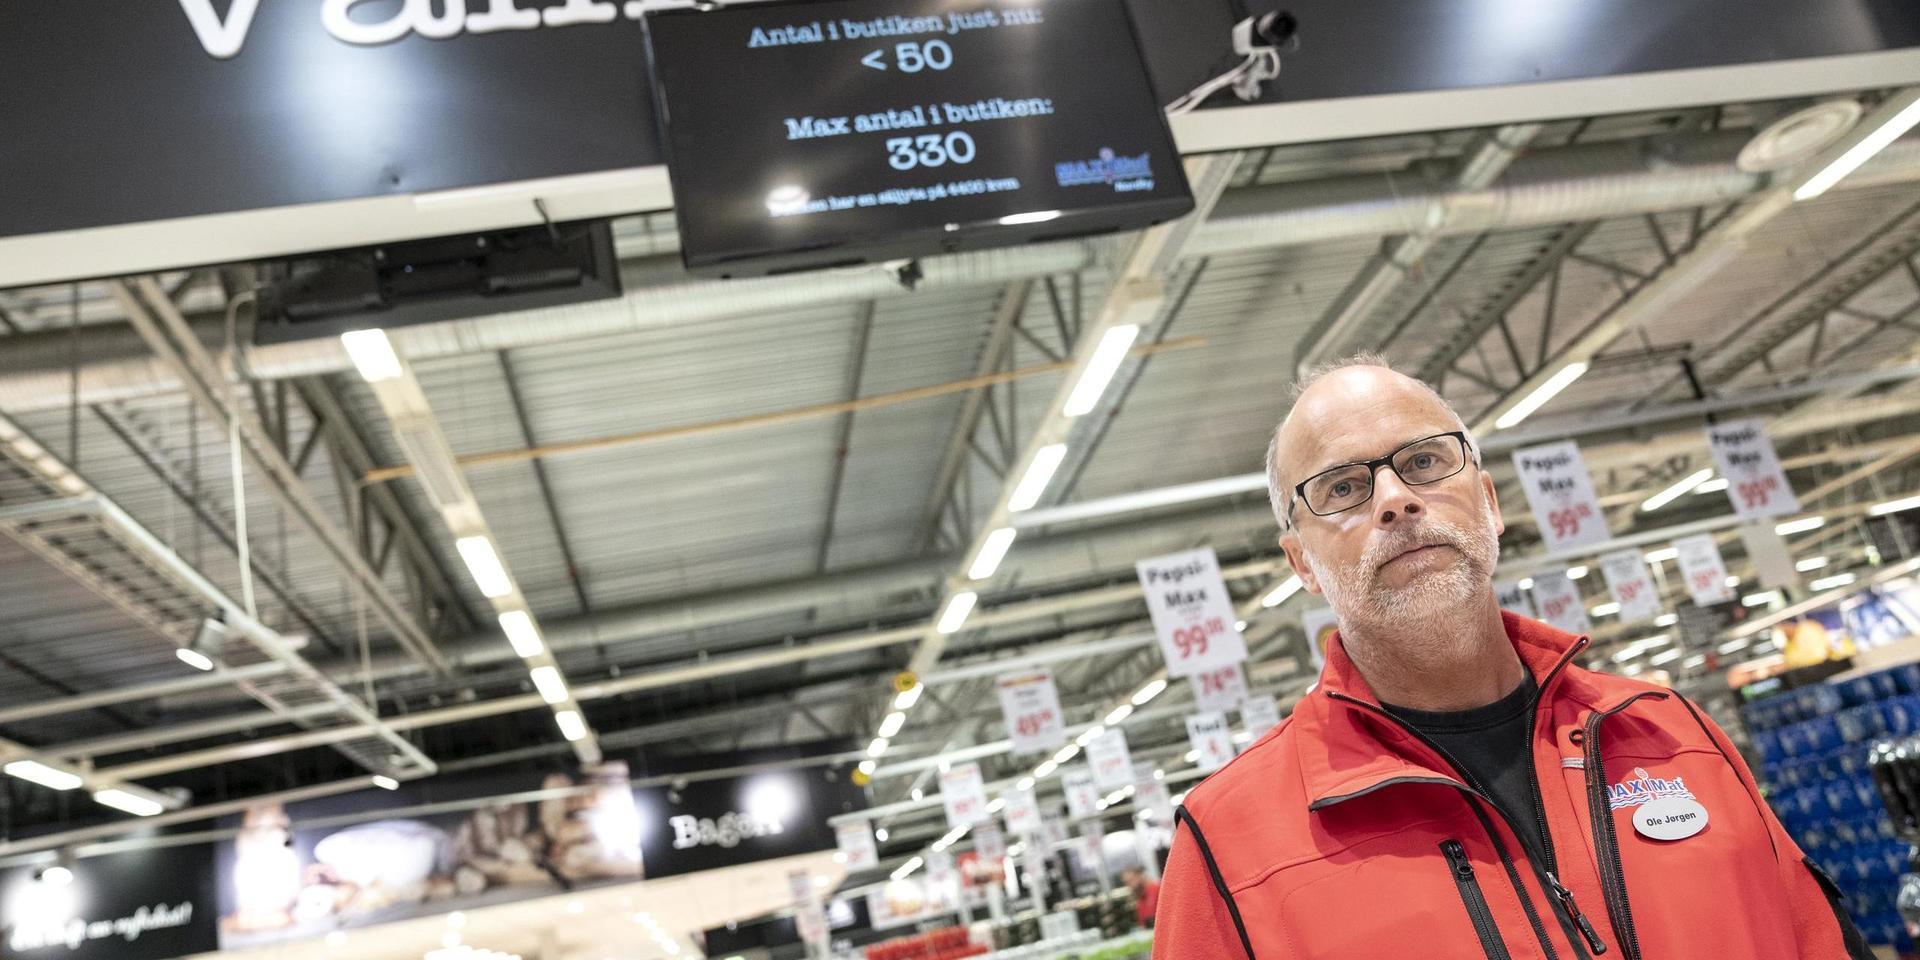 Butikschefen för Maximat hoppas nu att kunderna ska komma tillbaka. Men fortfarande gäller svenska regler. Och det innebär max 330 personer i butiken. 'Vi har installerat ett nytt kamerasystem som sköta jobbet. De räknar hur många som är i butiken', säger Ole Jörgen Lind.